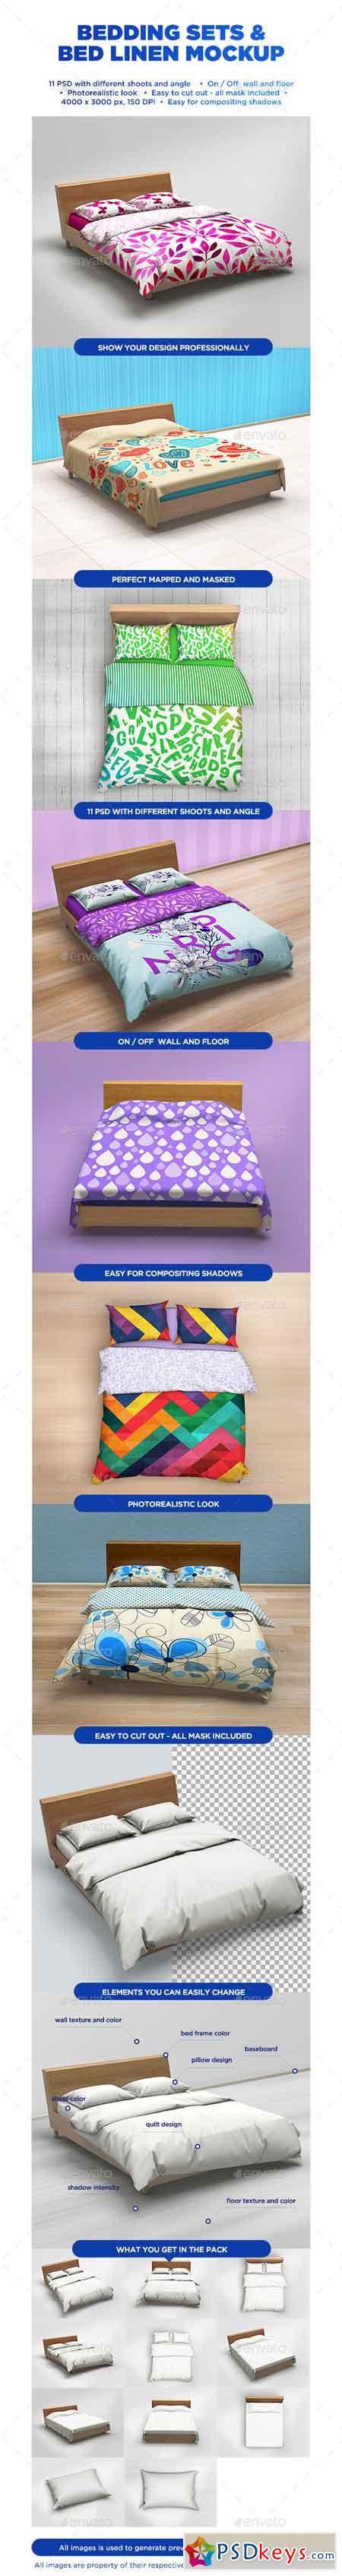 Download Bedding Sets & Bed Linen Mockup 12018429 » Free Download ...